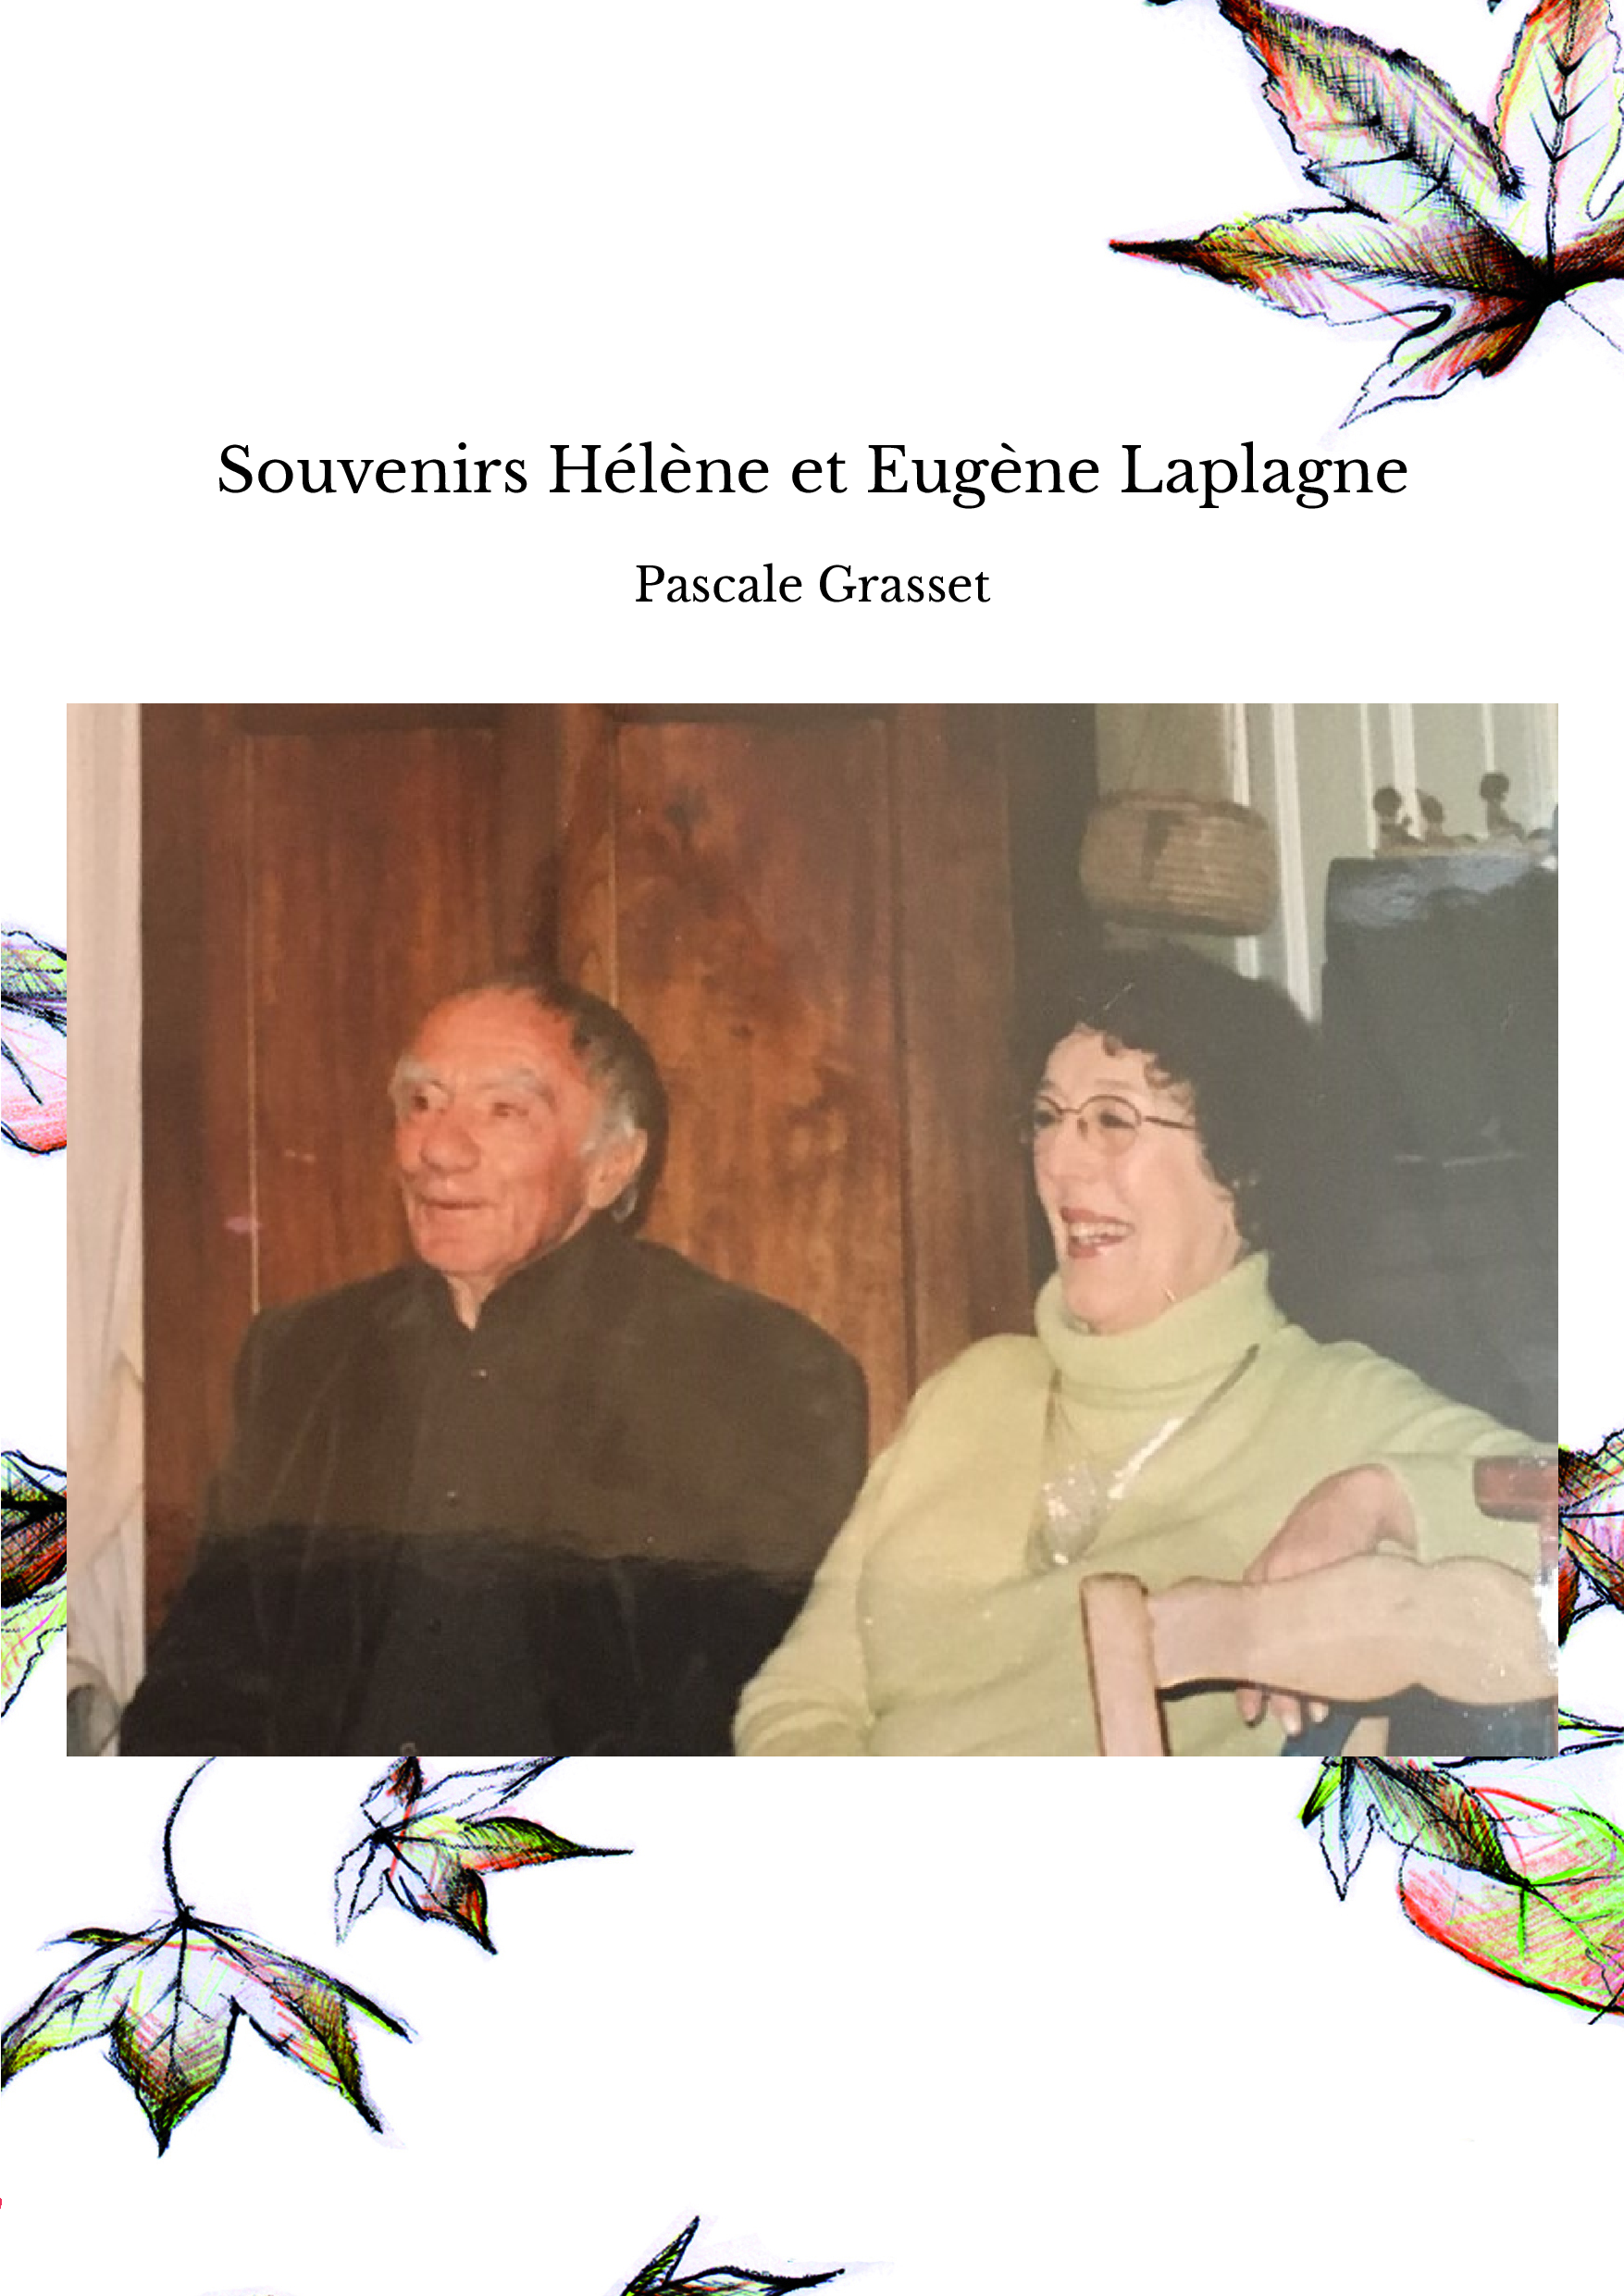 Souvenirs Hélène et Eugène Laplagne